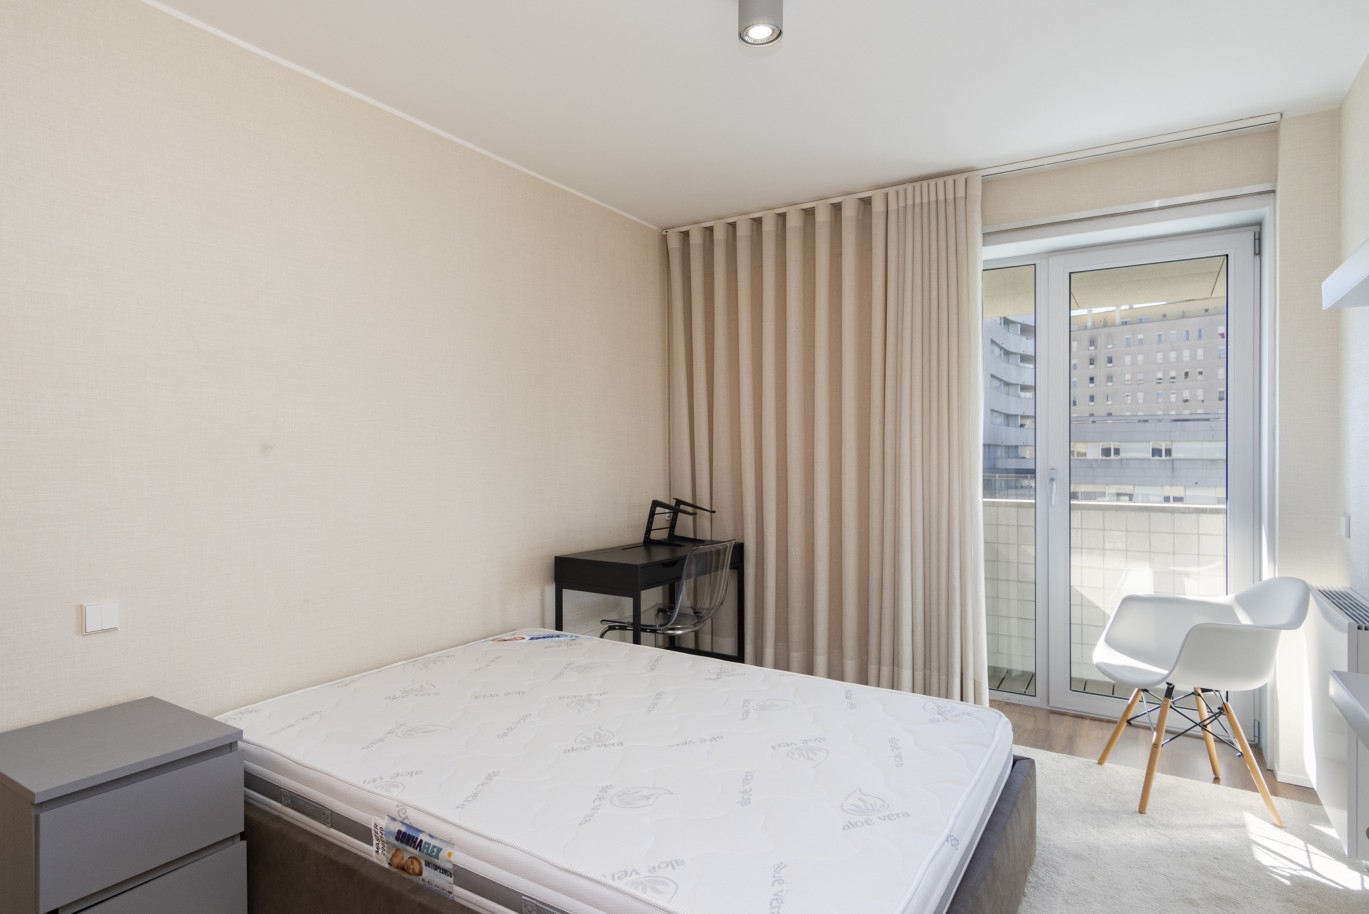 3 Bedroom Duplex Apartment with balcony, for sale, in Boavista, Porto, Portugal_217712